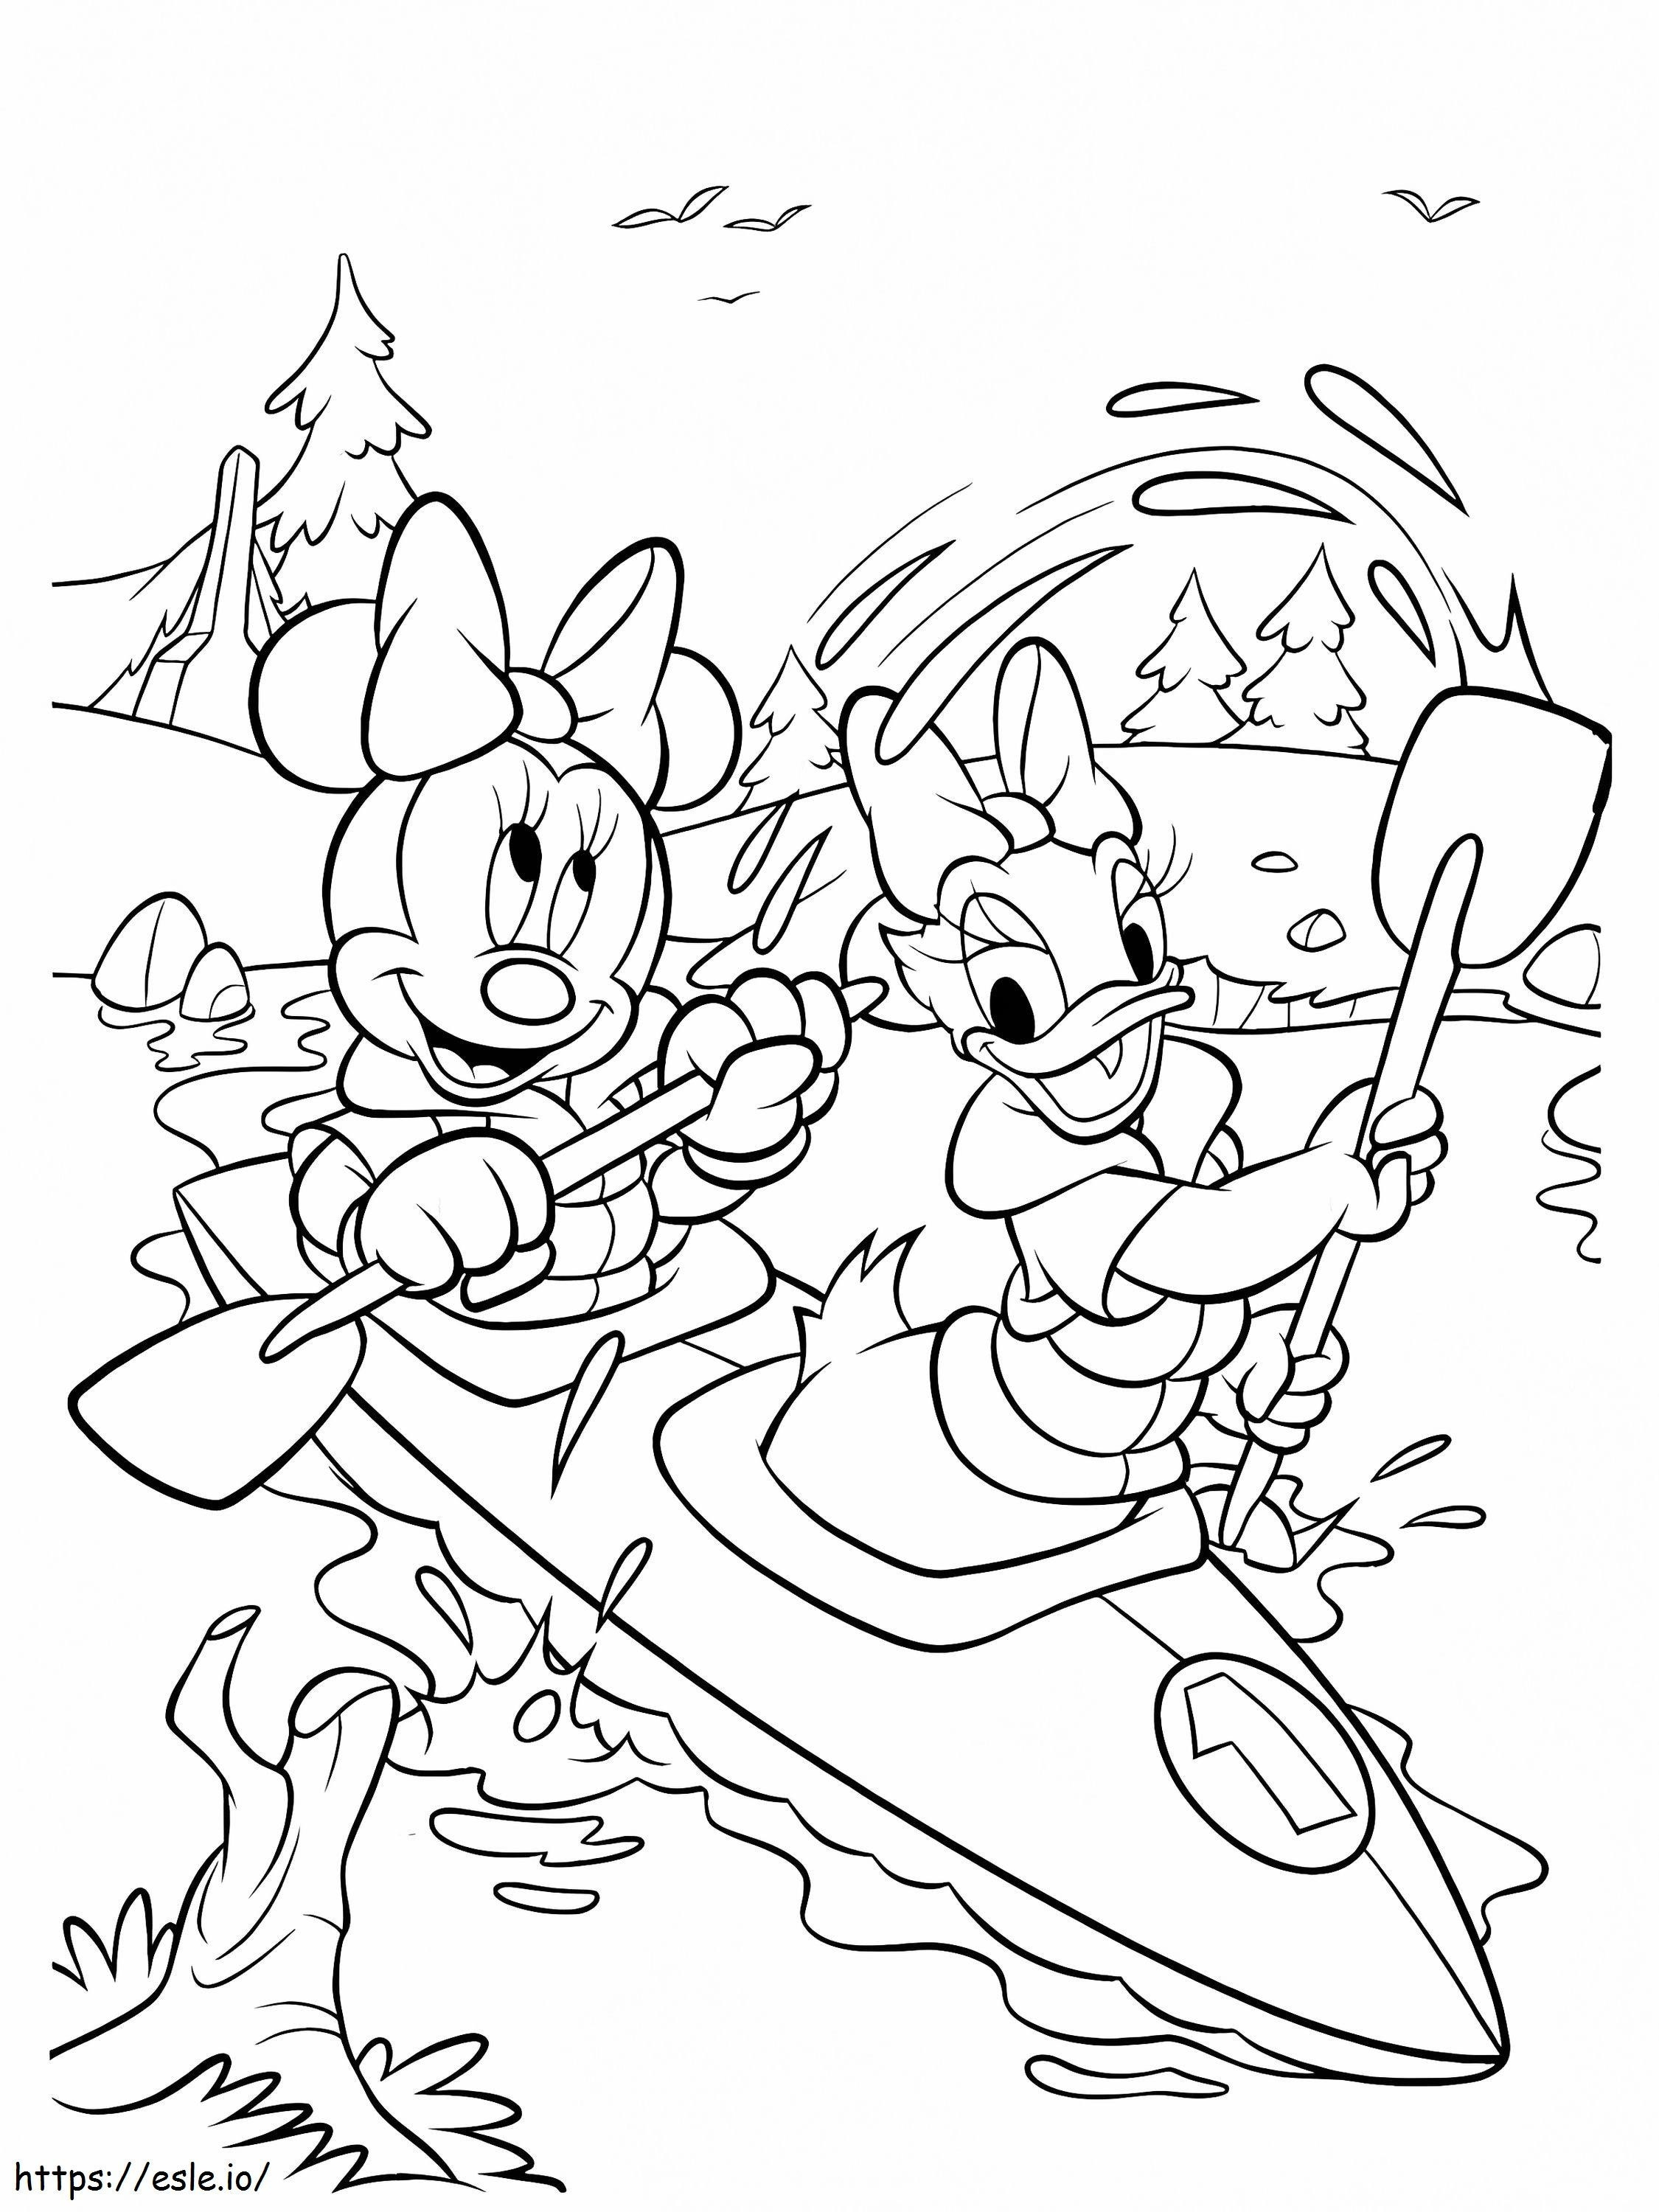 Minnie Mouse și Daisy Duck vâslit pe o barcă de colorat